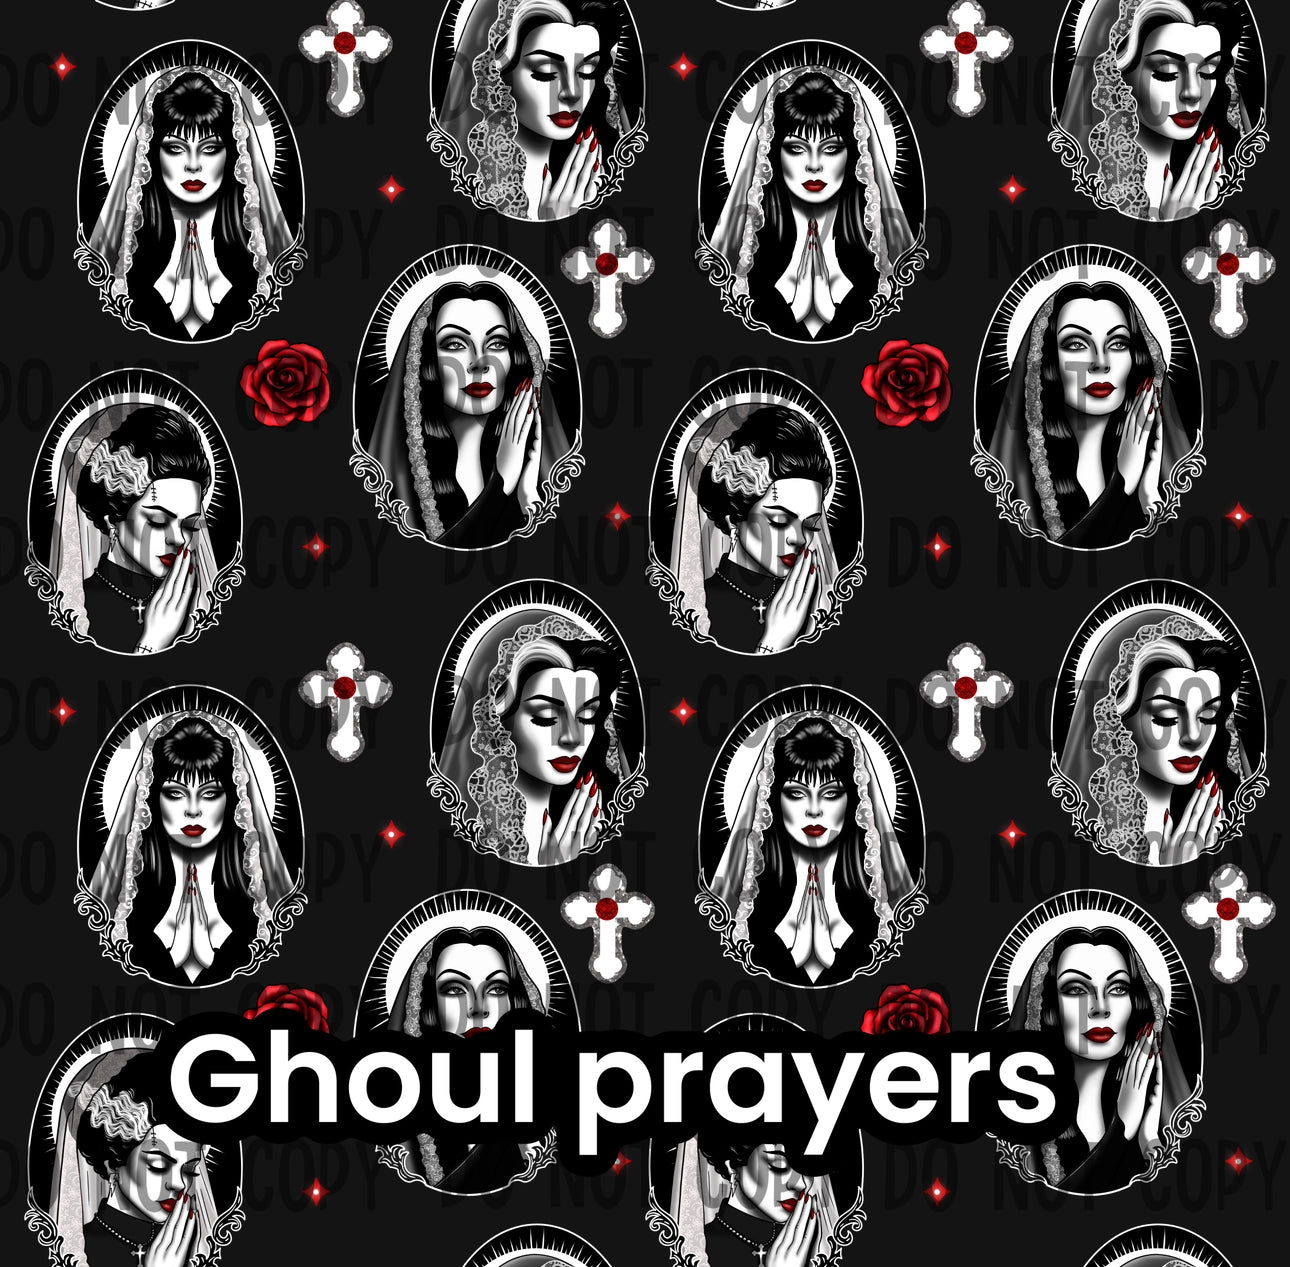 Ghouls prayers